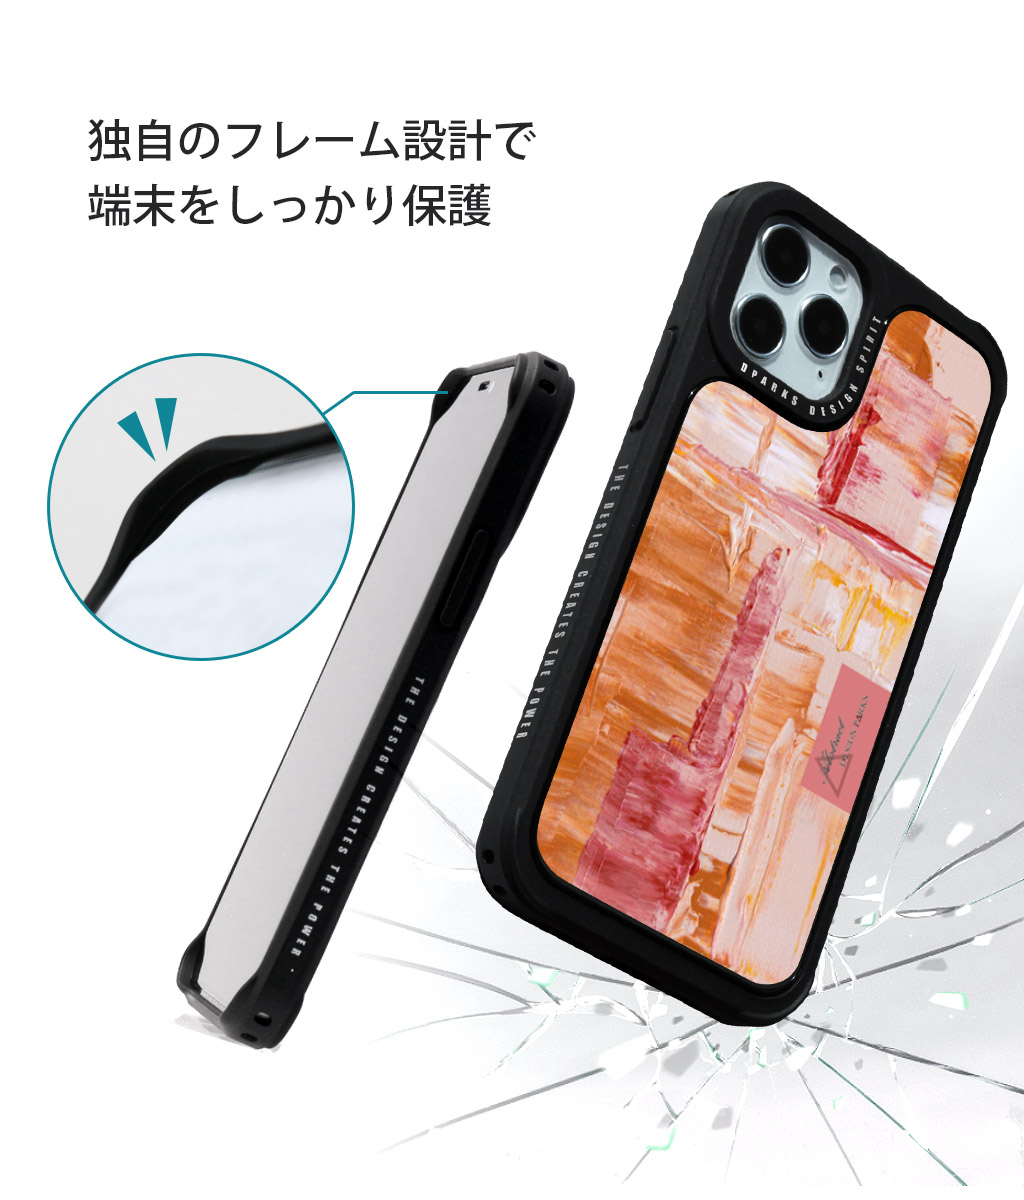 【楽天市場】アイフォン 12 ケース mini 耐衝撃 ハードケース Dparks BLACK COVER ペインティングiphone 12 pro  カバー iphone 12 mini ケース 可愛い 背面 かわいい ハードカバー ブラック ペイント 油絵 韓国 おもしろ ブランド アウトドア:  